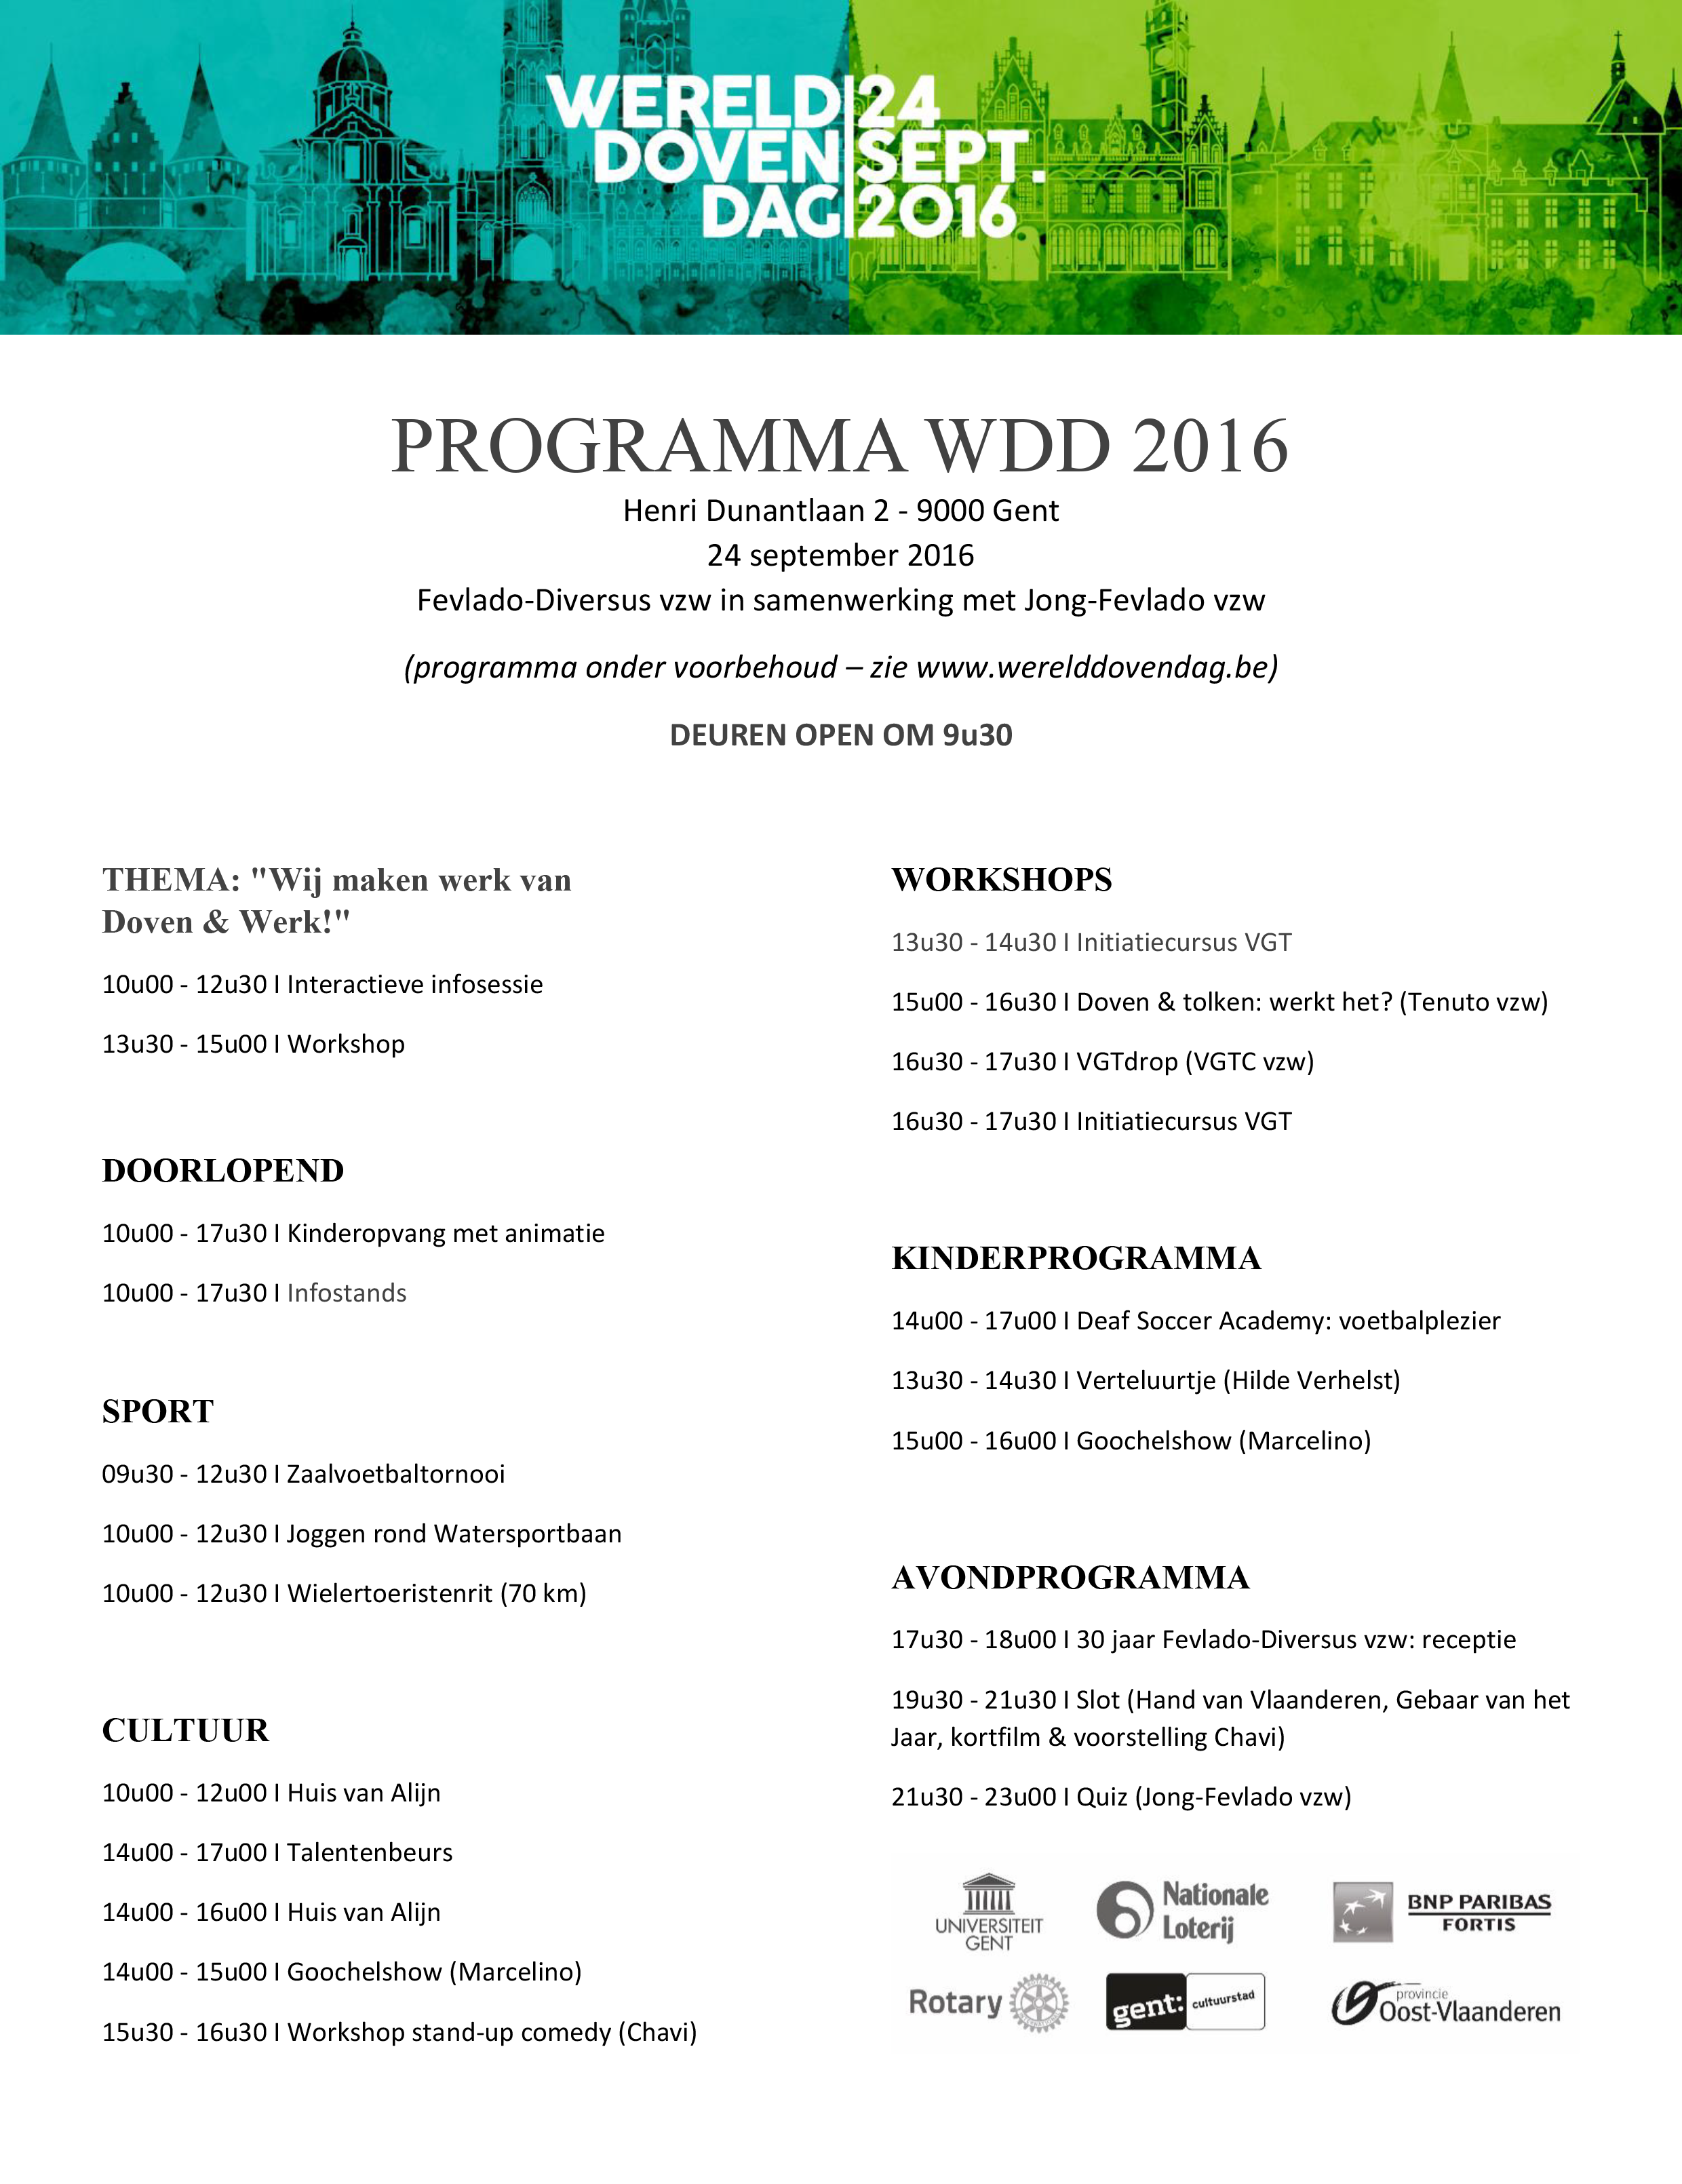 Programma WDD2016 voor ledenblad dovenclubs